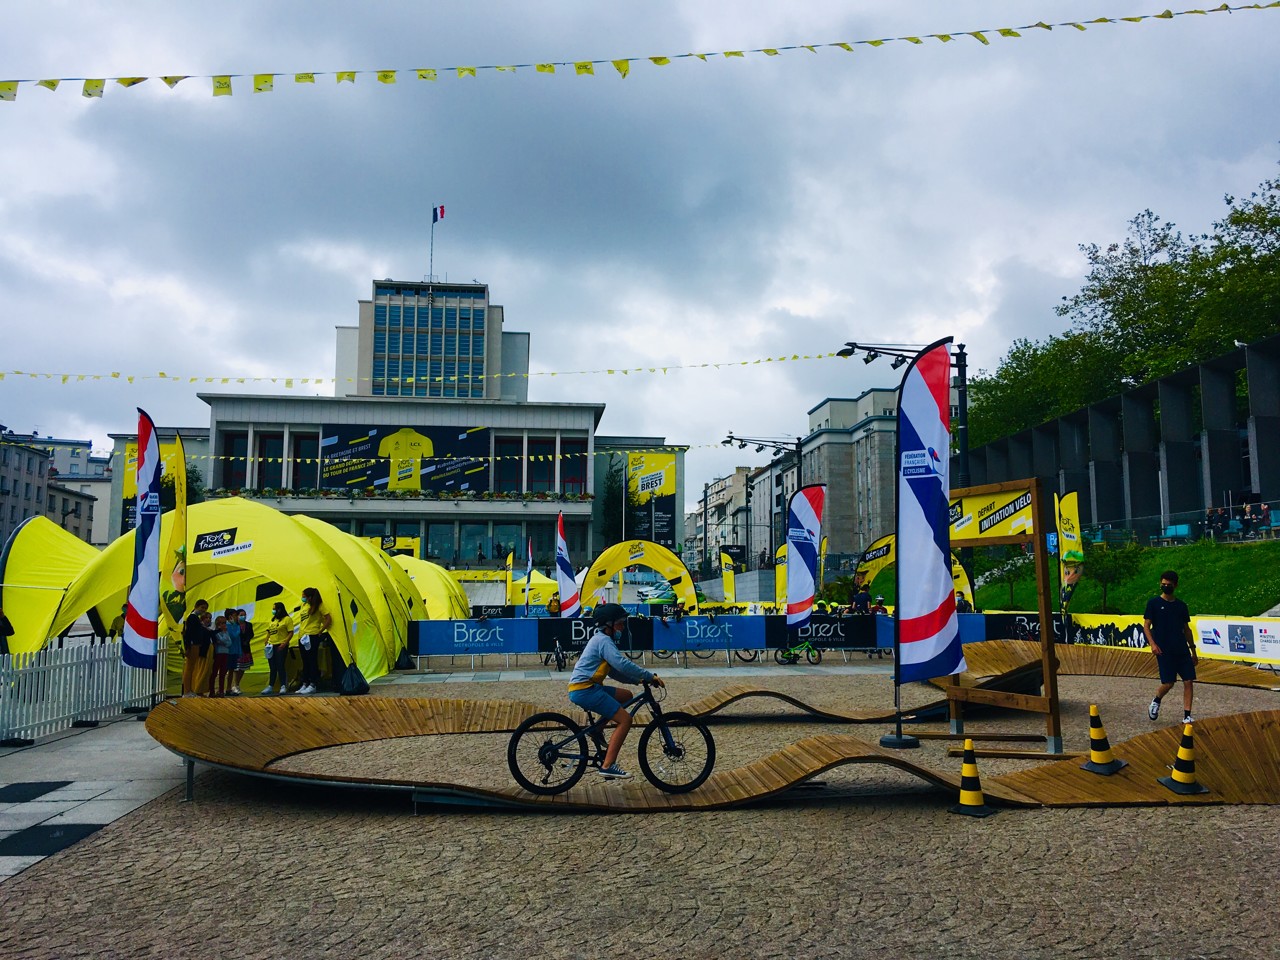 Tour de France in Laval: Boston’s Fan Park begins tomorrow